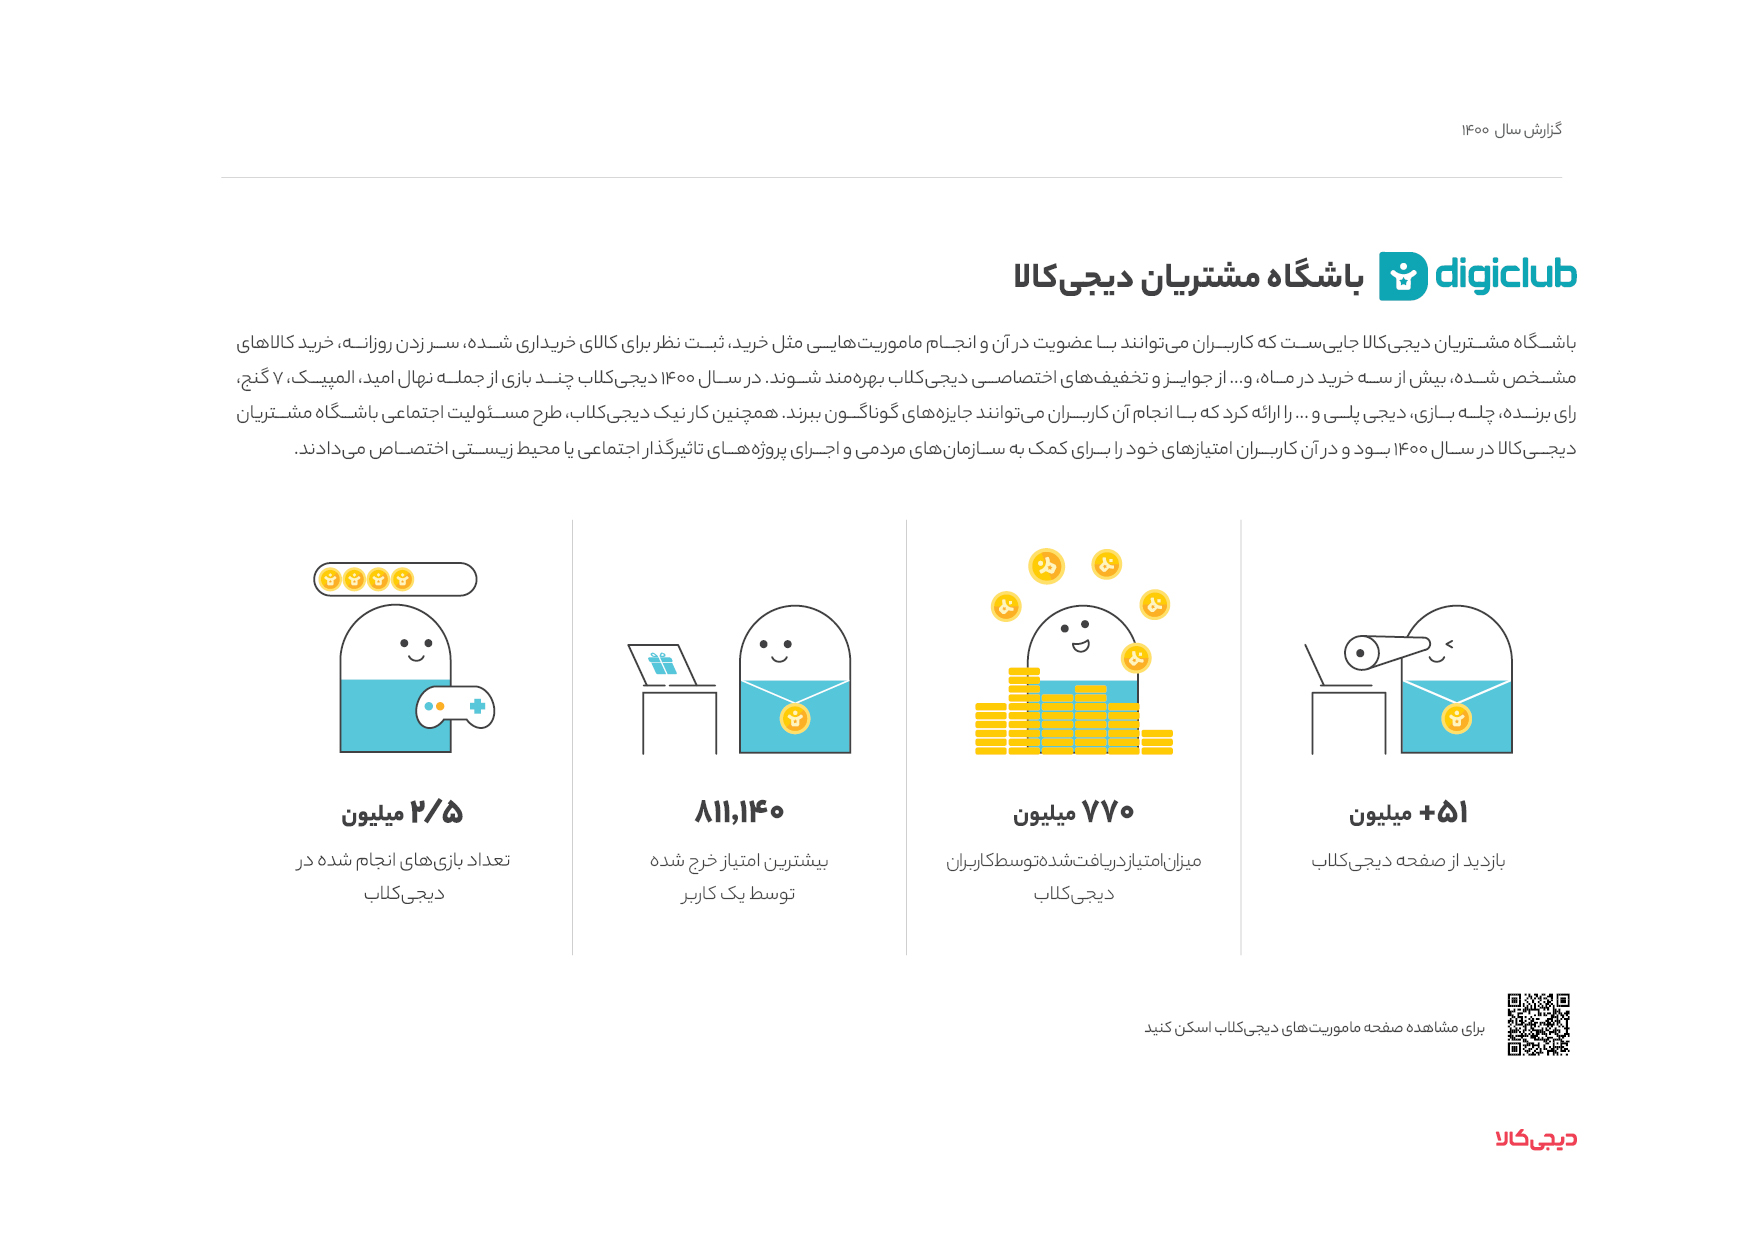 رفتار کاربران دیجی‌کالا چه اطلاعاتی در مورد تجربه خرید آنلاین در ایران به ما می‌دهد؟